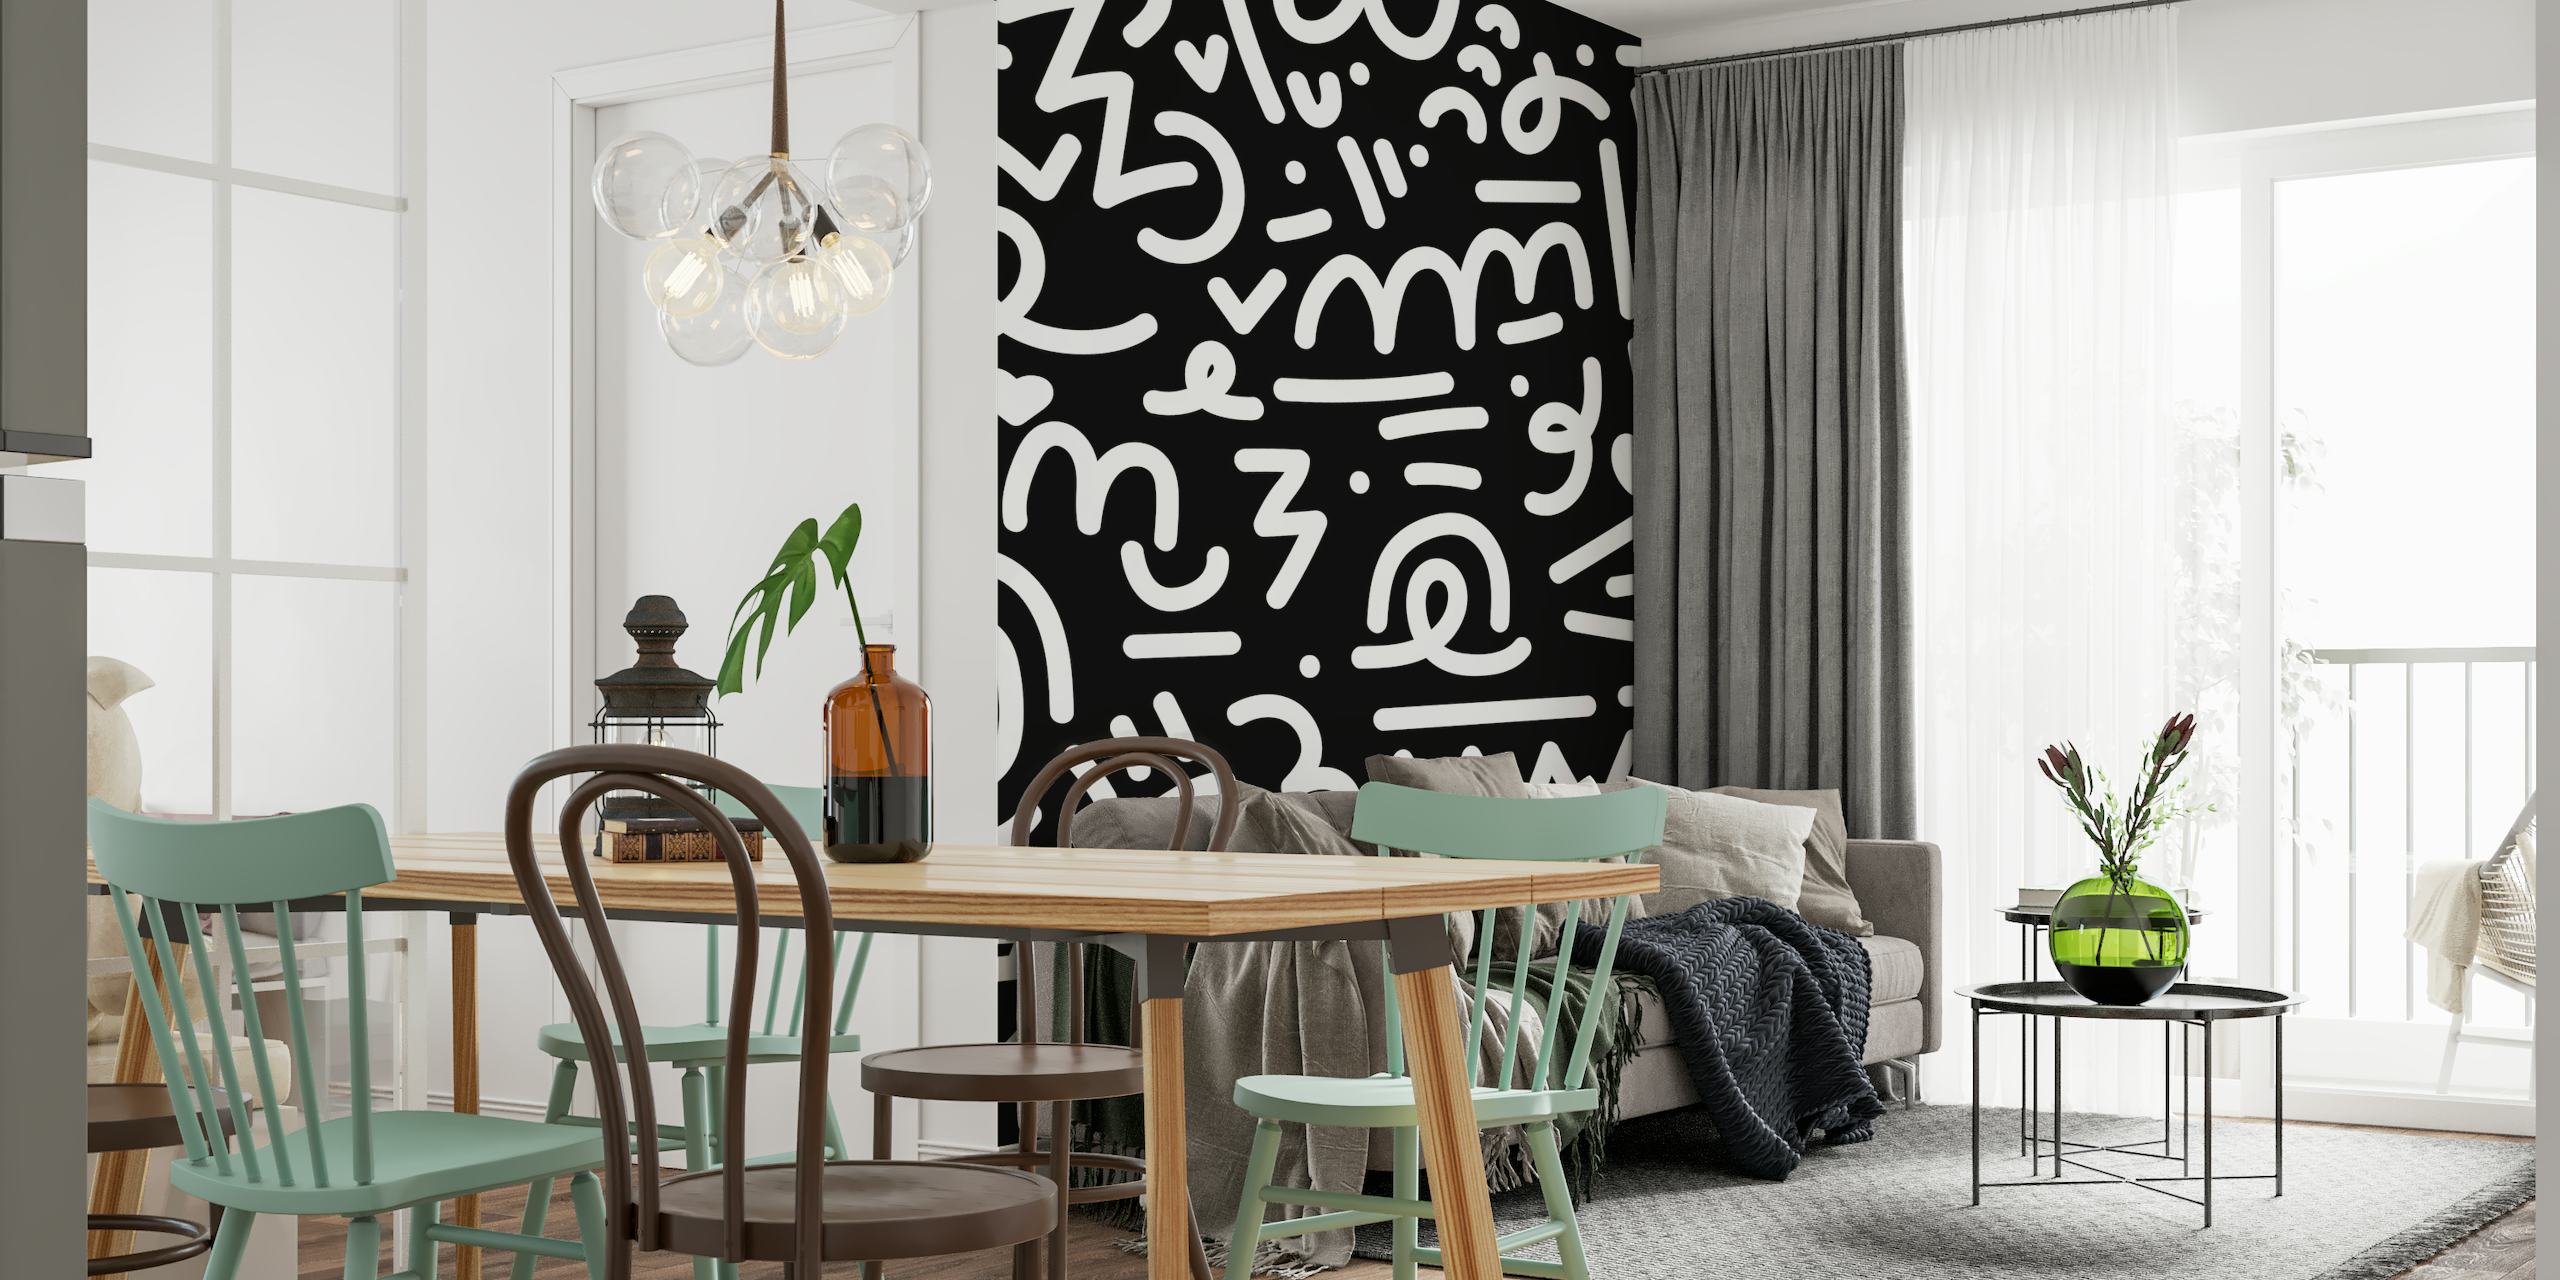 Ein Wandbild mit schwarz-weißen Kritzeleien und skurrilen handgezeichneten Elementen.